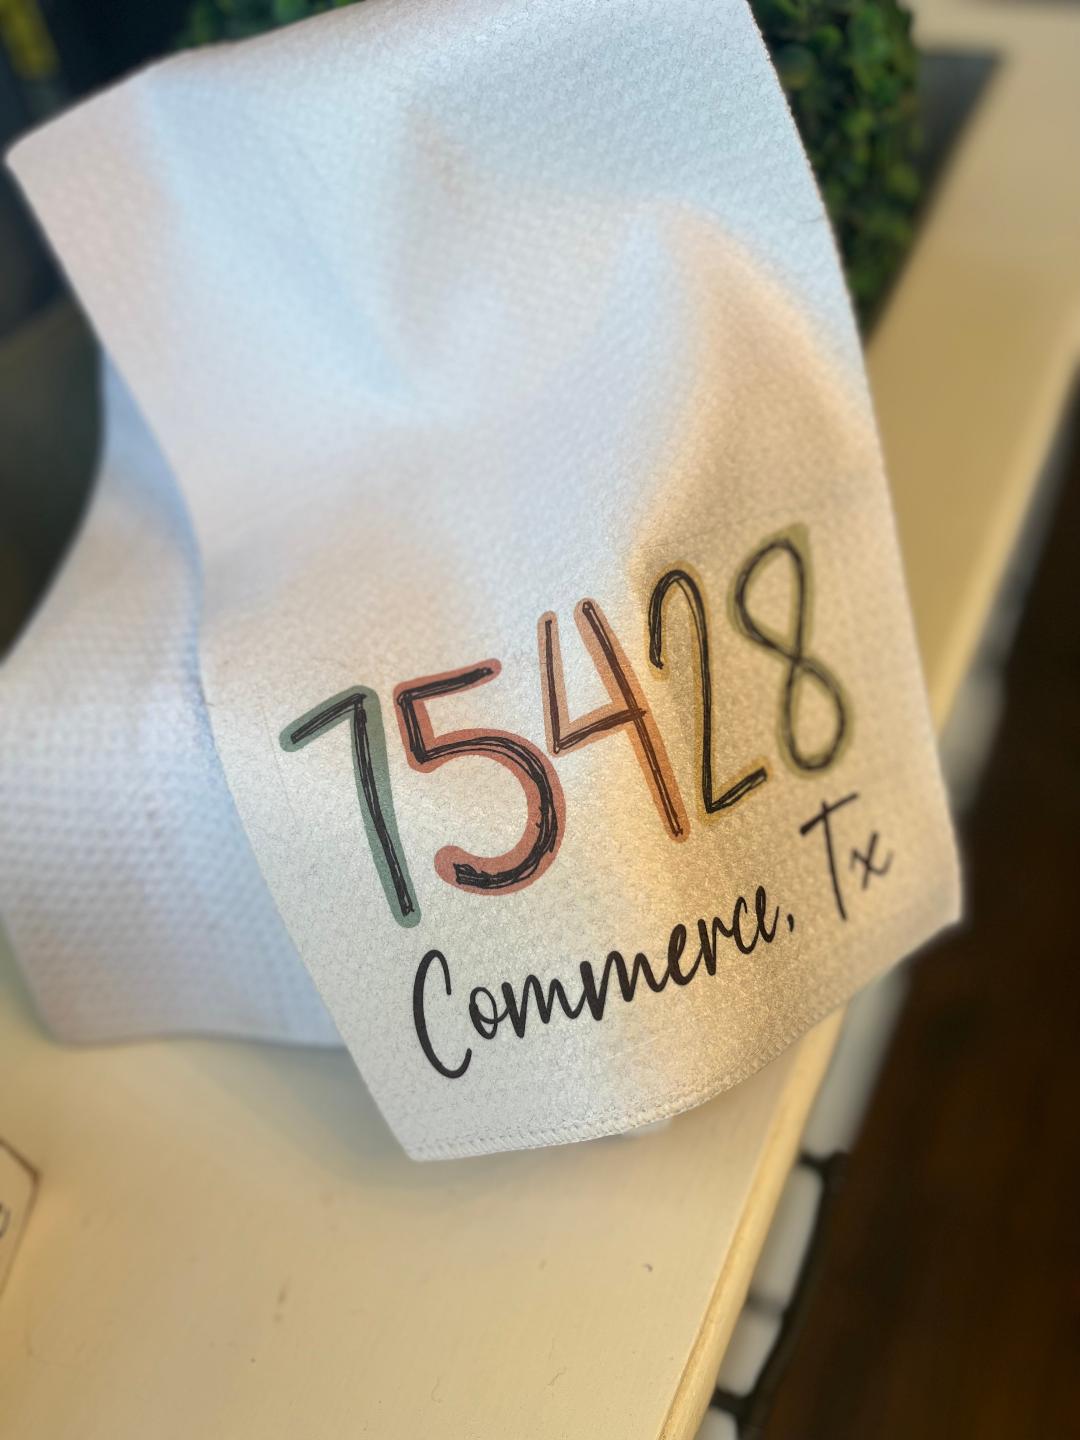 75428 COMMERCE, TX ZIP CODE HAND TOWEL